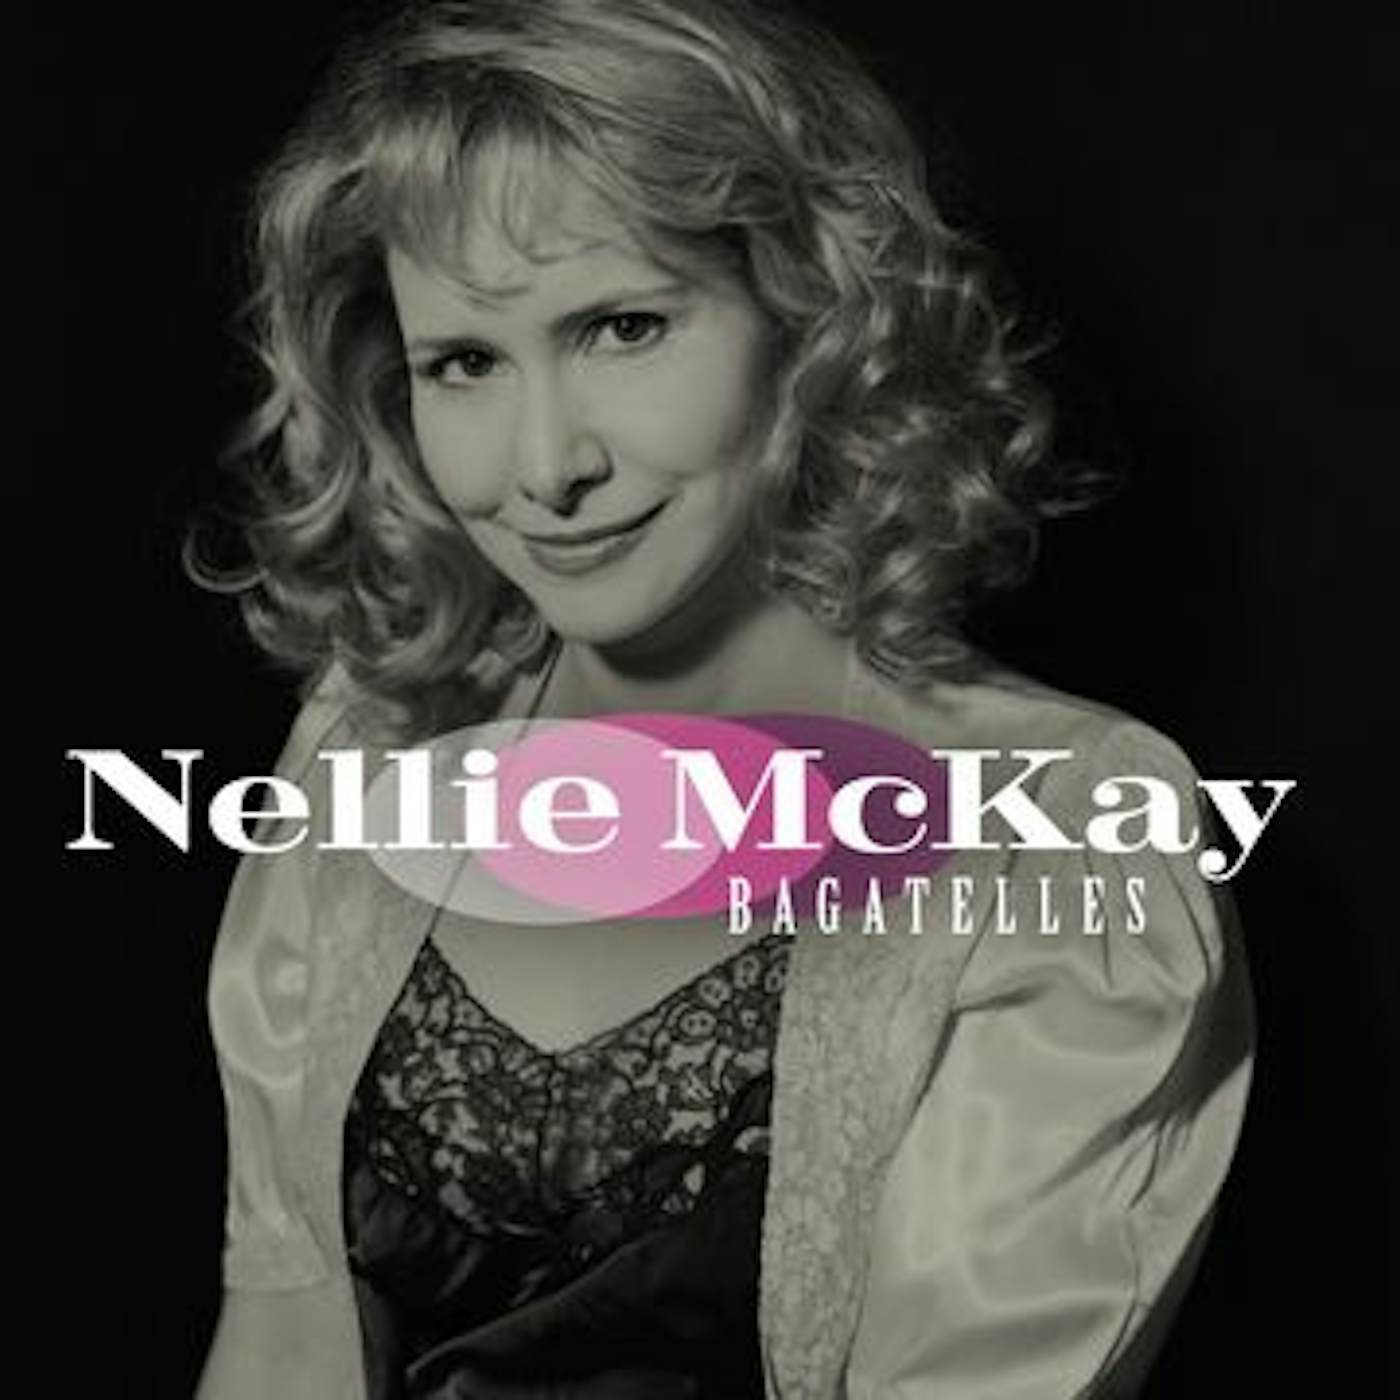 Nellie McKay BAGATELLES CD